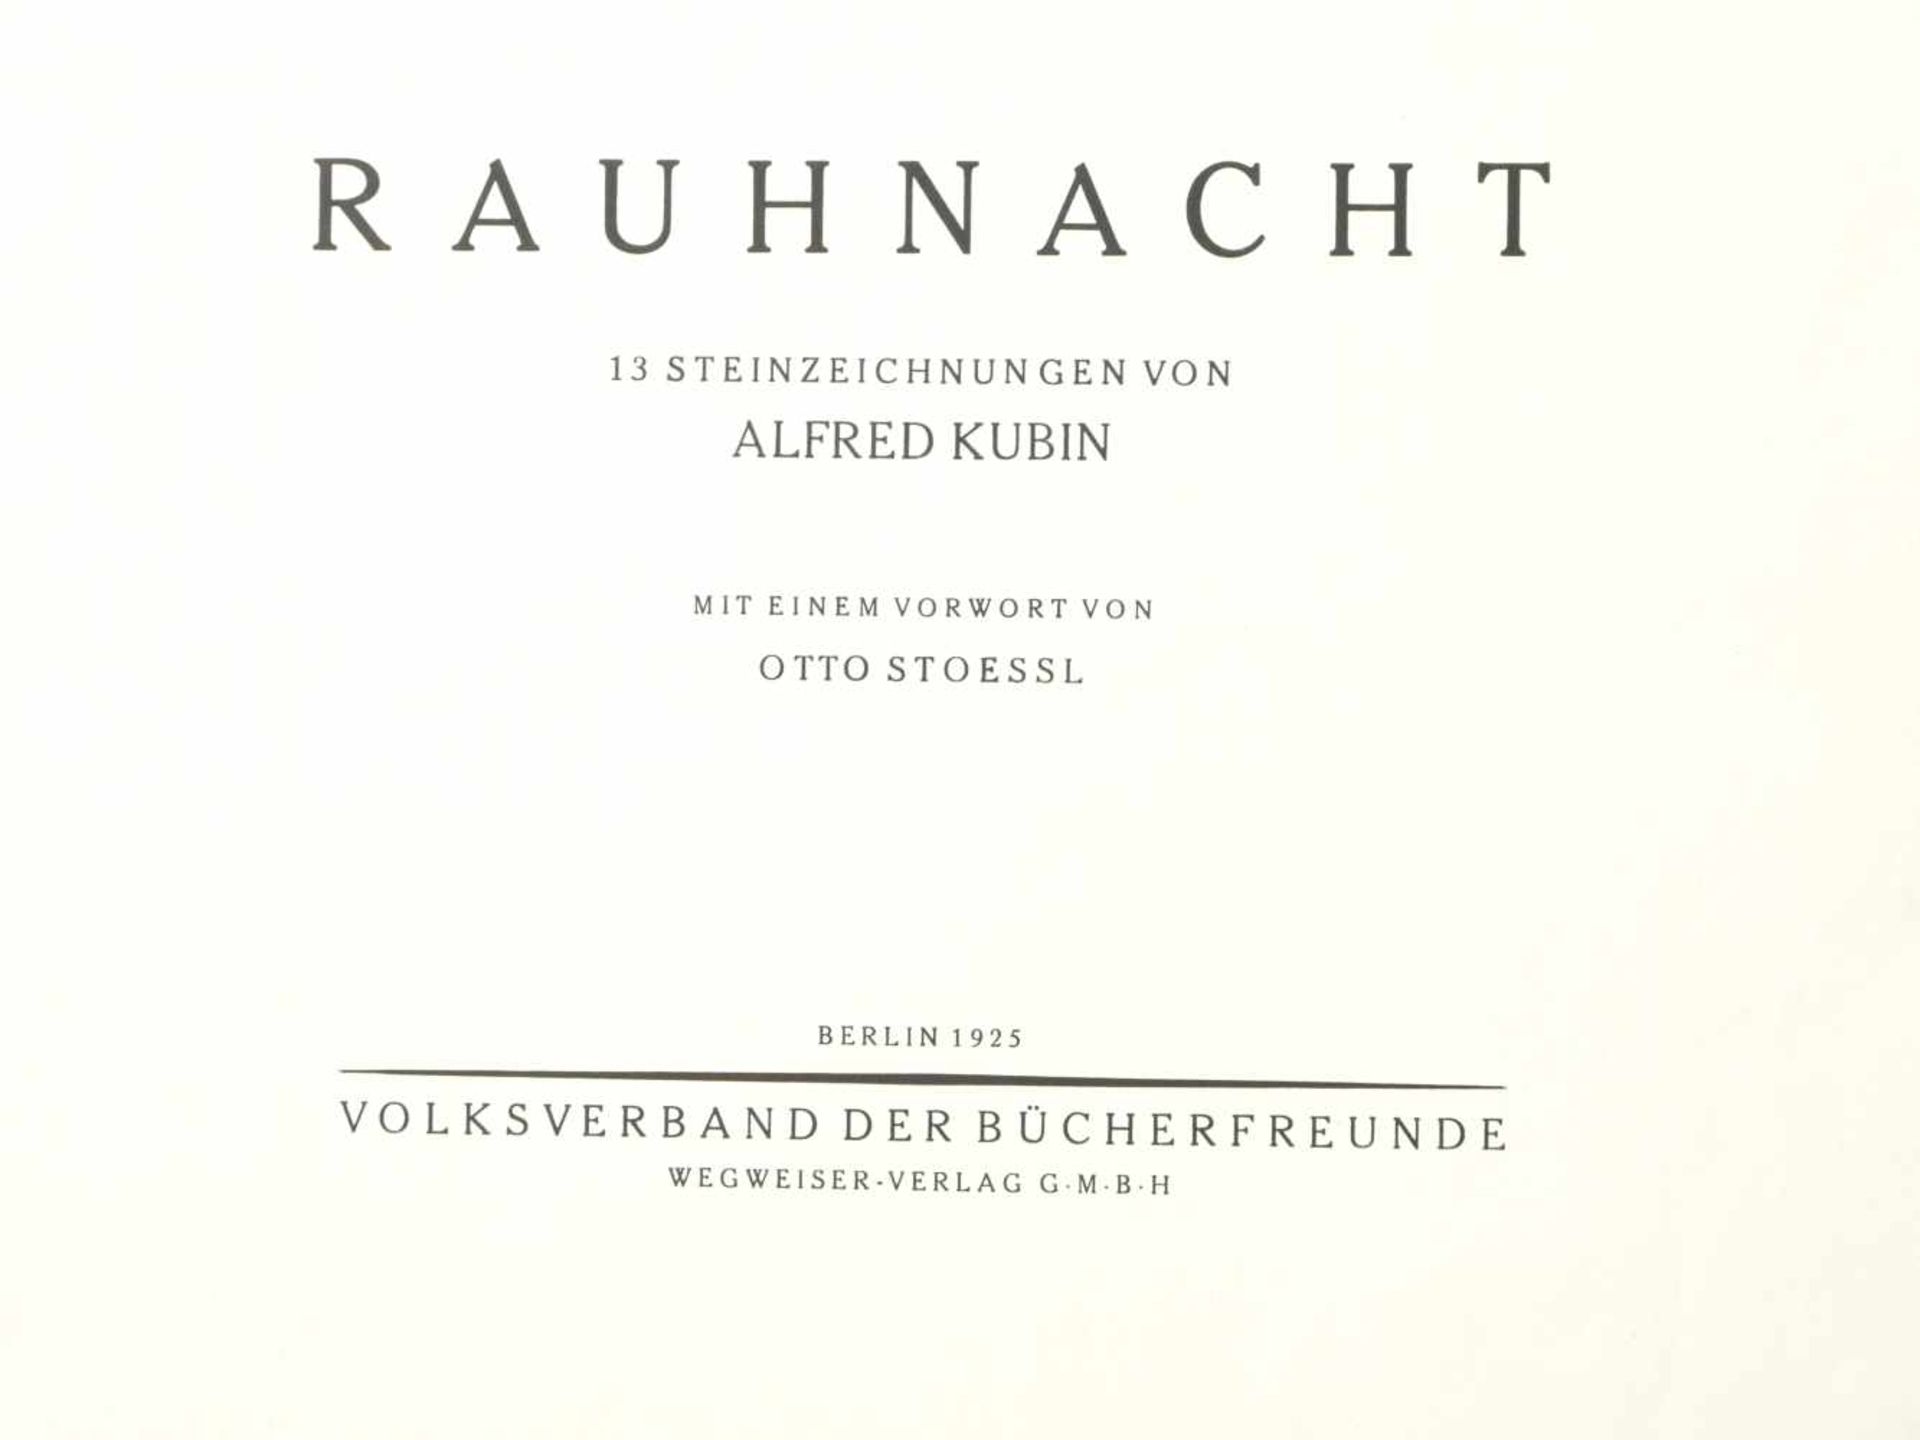 Kubin, Alfred (1877-1959) - Mappe Rauhnacht 13 Steinzeichnungen 1925Mappe mit 13 lose eingelegten - Image 2 of 4